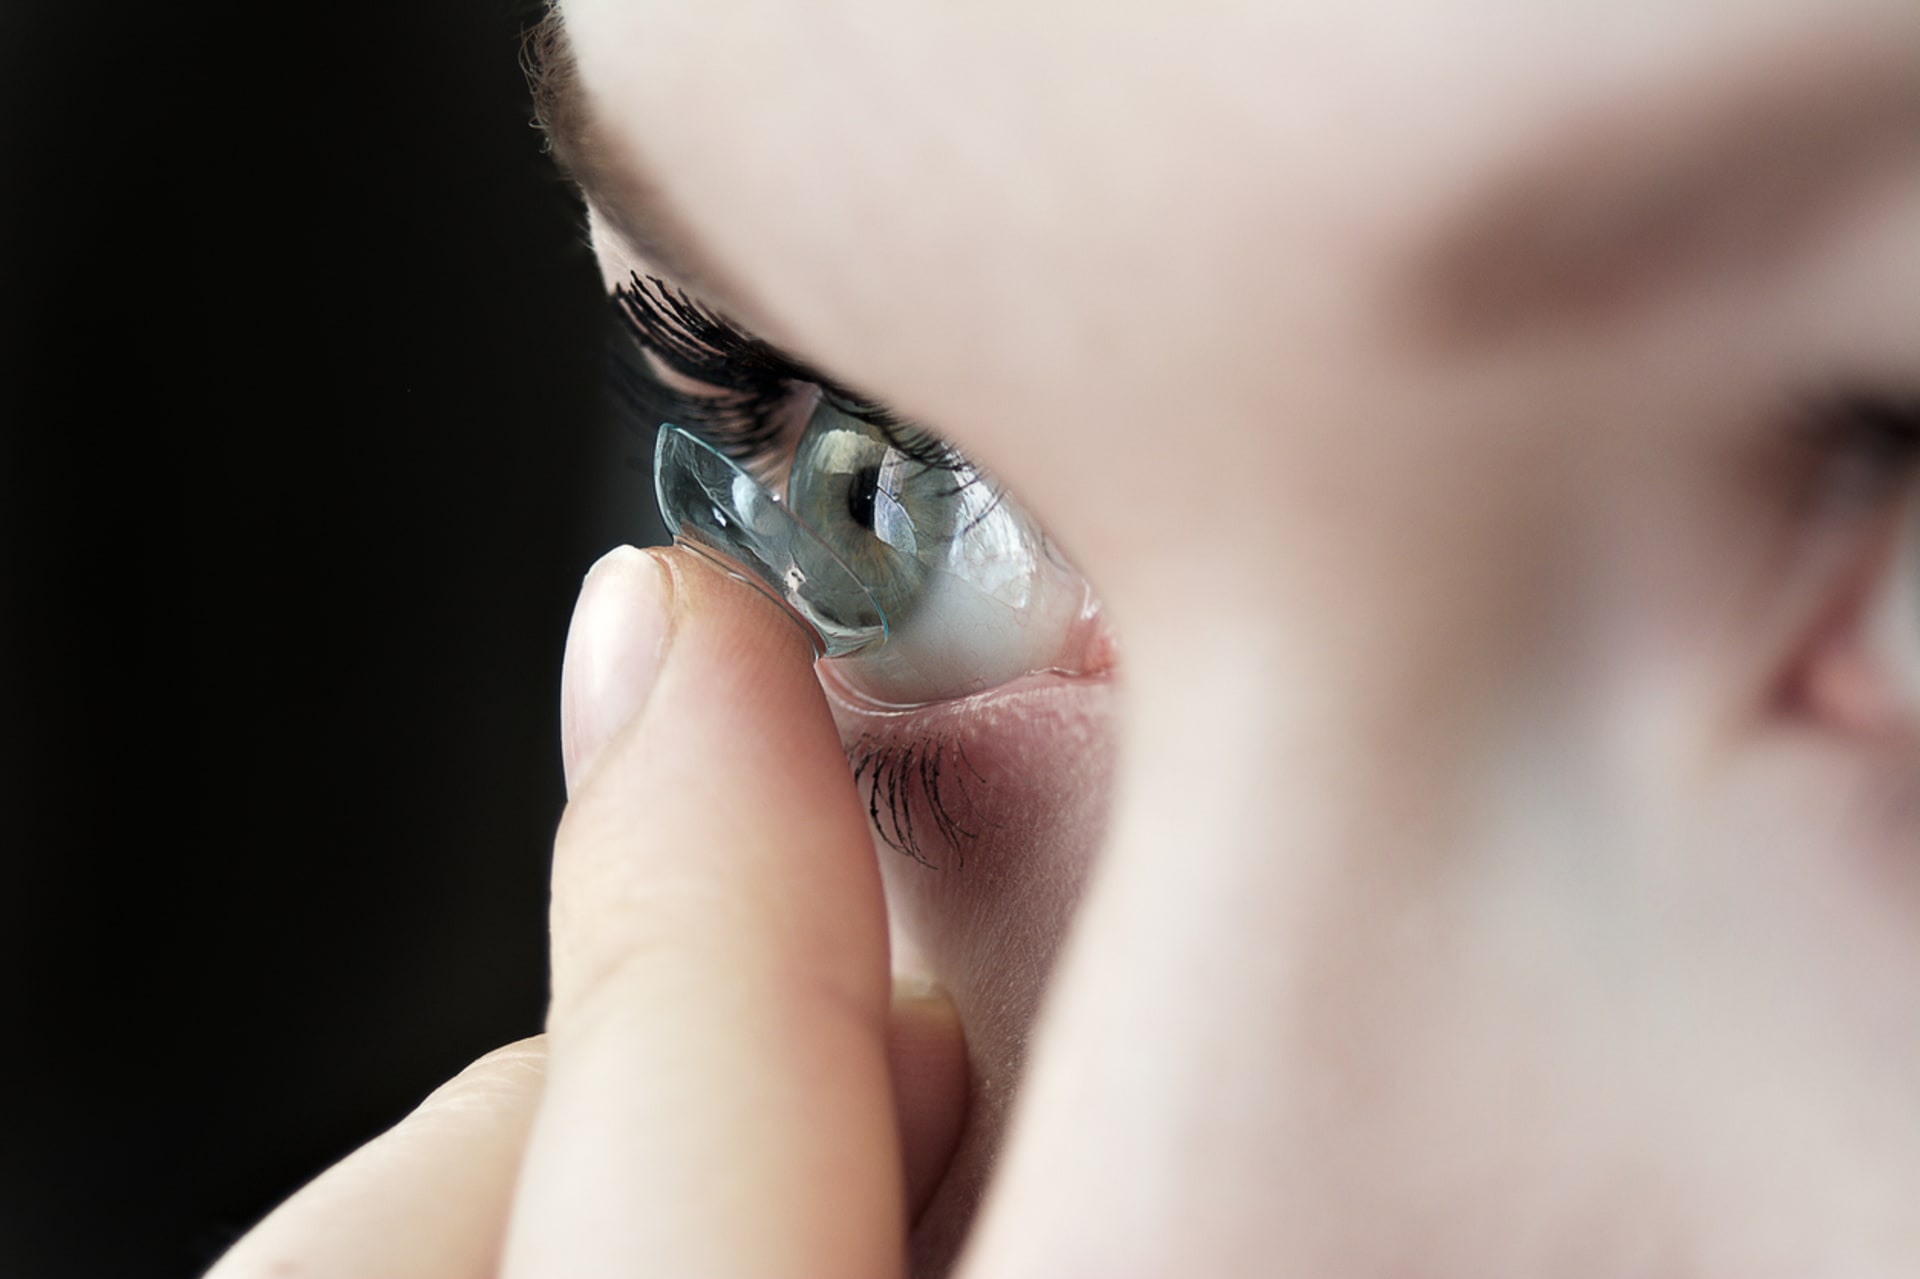 Doktorka odstranila pacientce 23 kontaktních čoček z očí